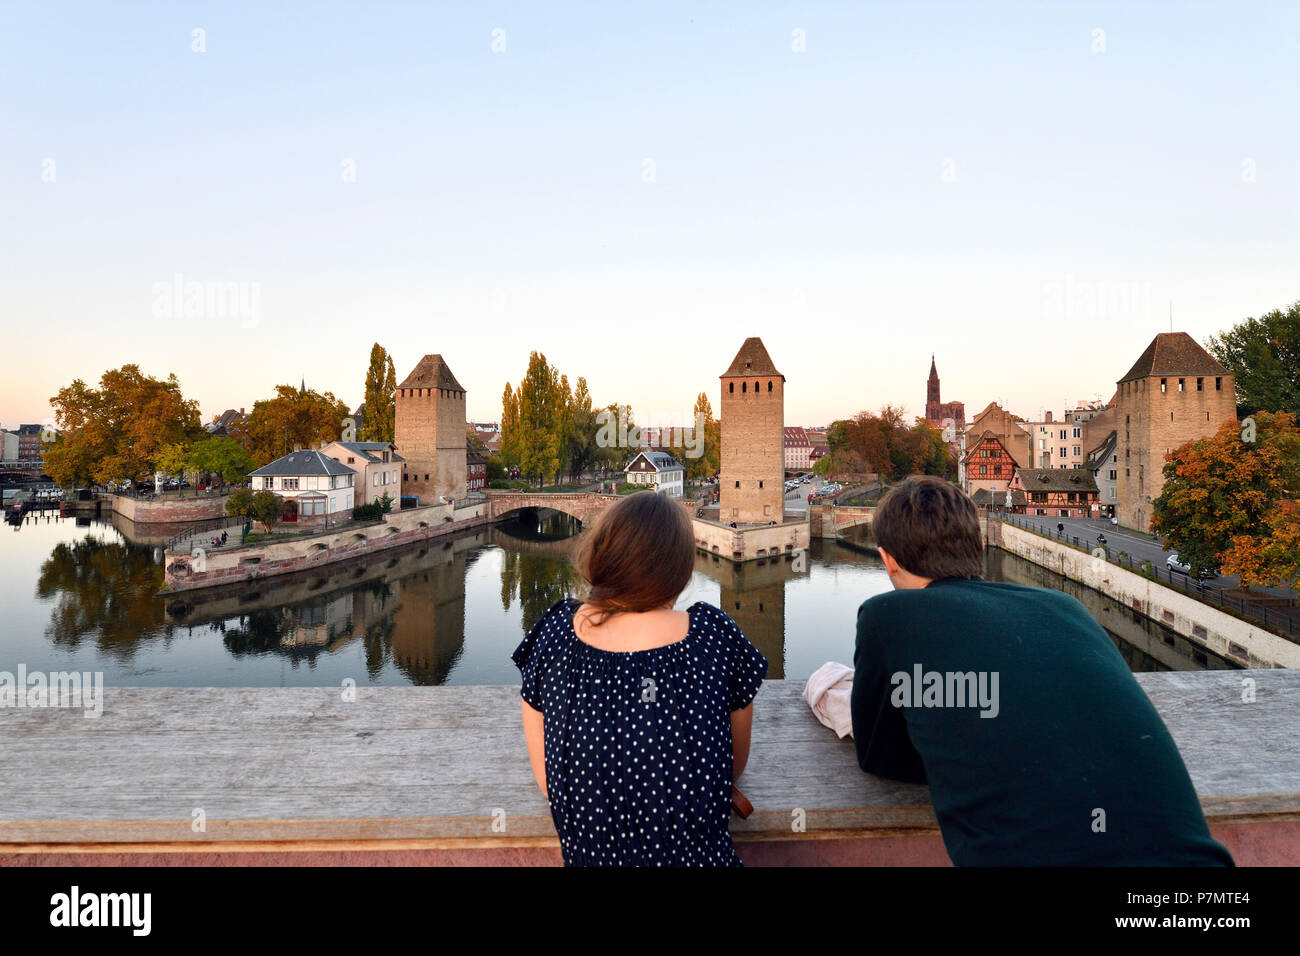 Frankreich, Bas Rhin, Straßburg, Altstadt zum Weltkulturerbe der UNESCO, Petite France, Touristen auf die Barrage Vauban Vauban (Wehr), den überdachten Brücken über den Fluss krank und die Kathedrale von Notre Dame Stockfoto